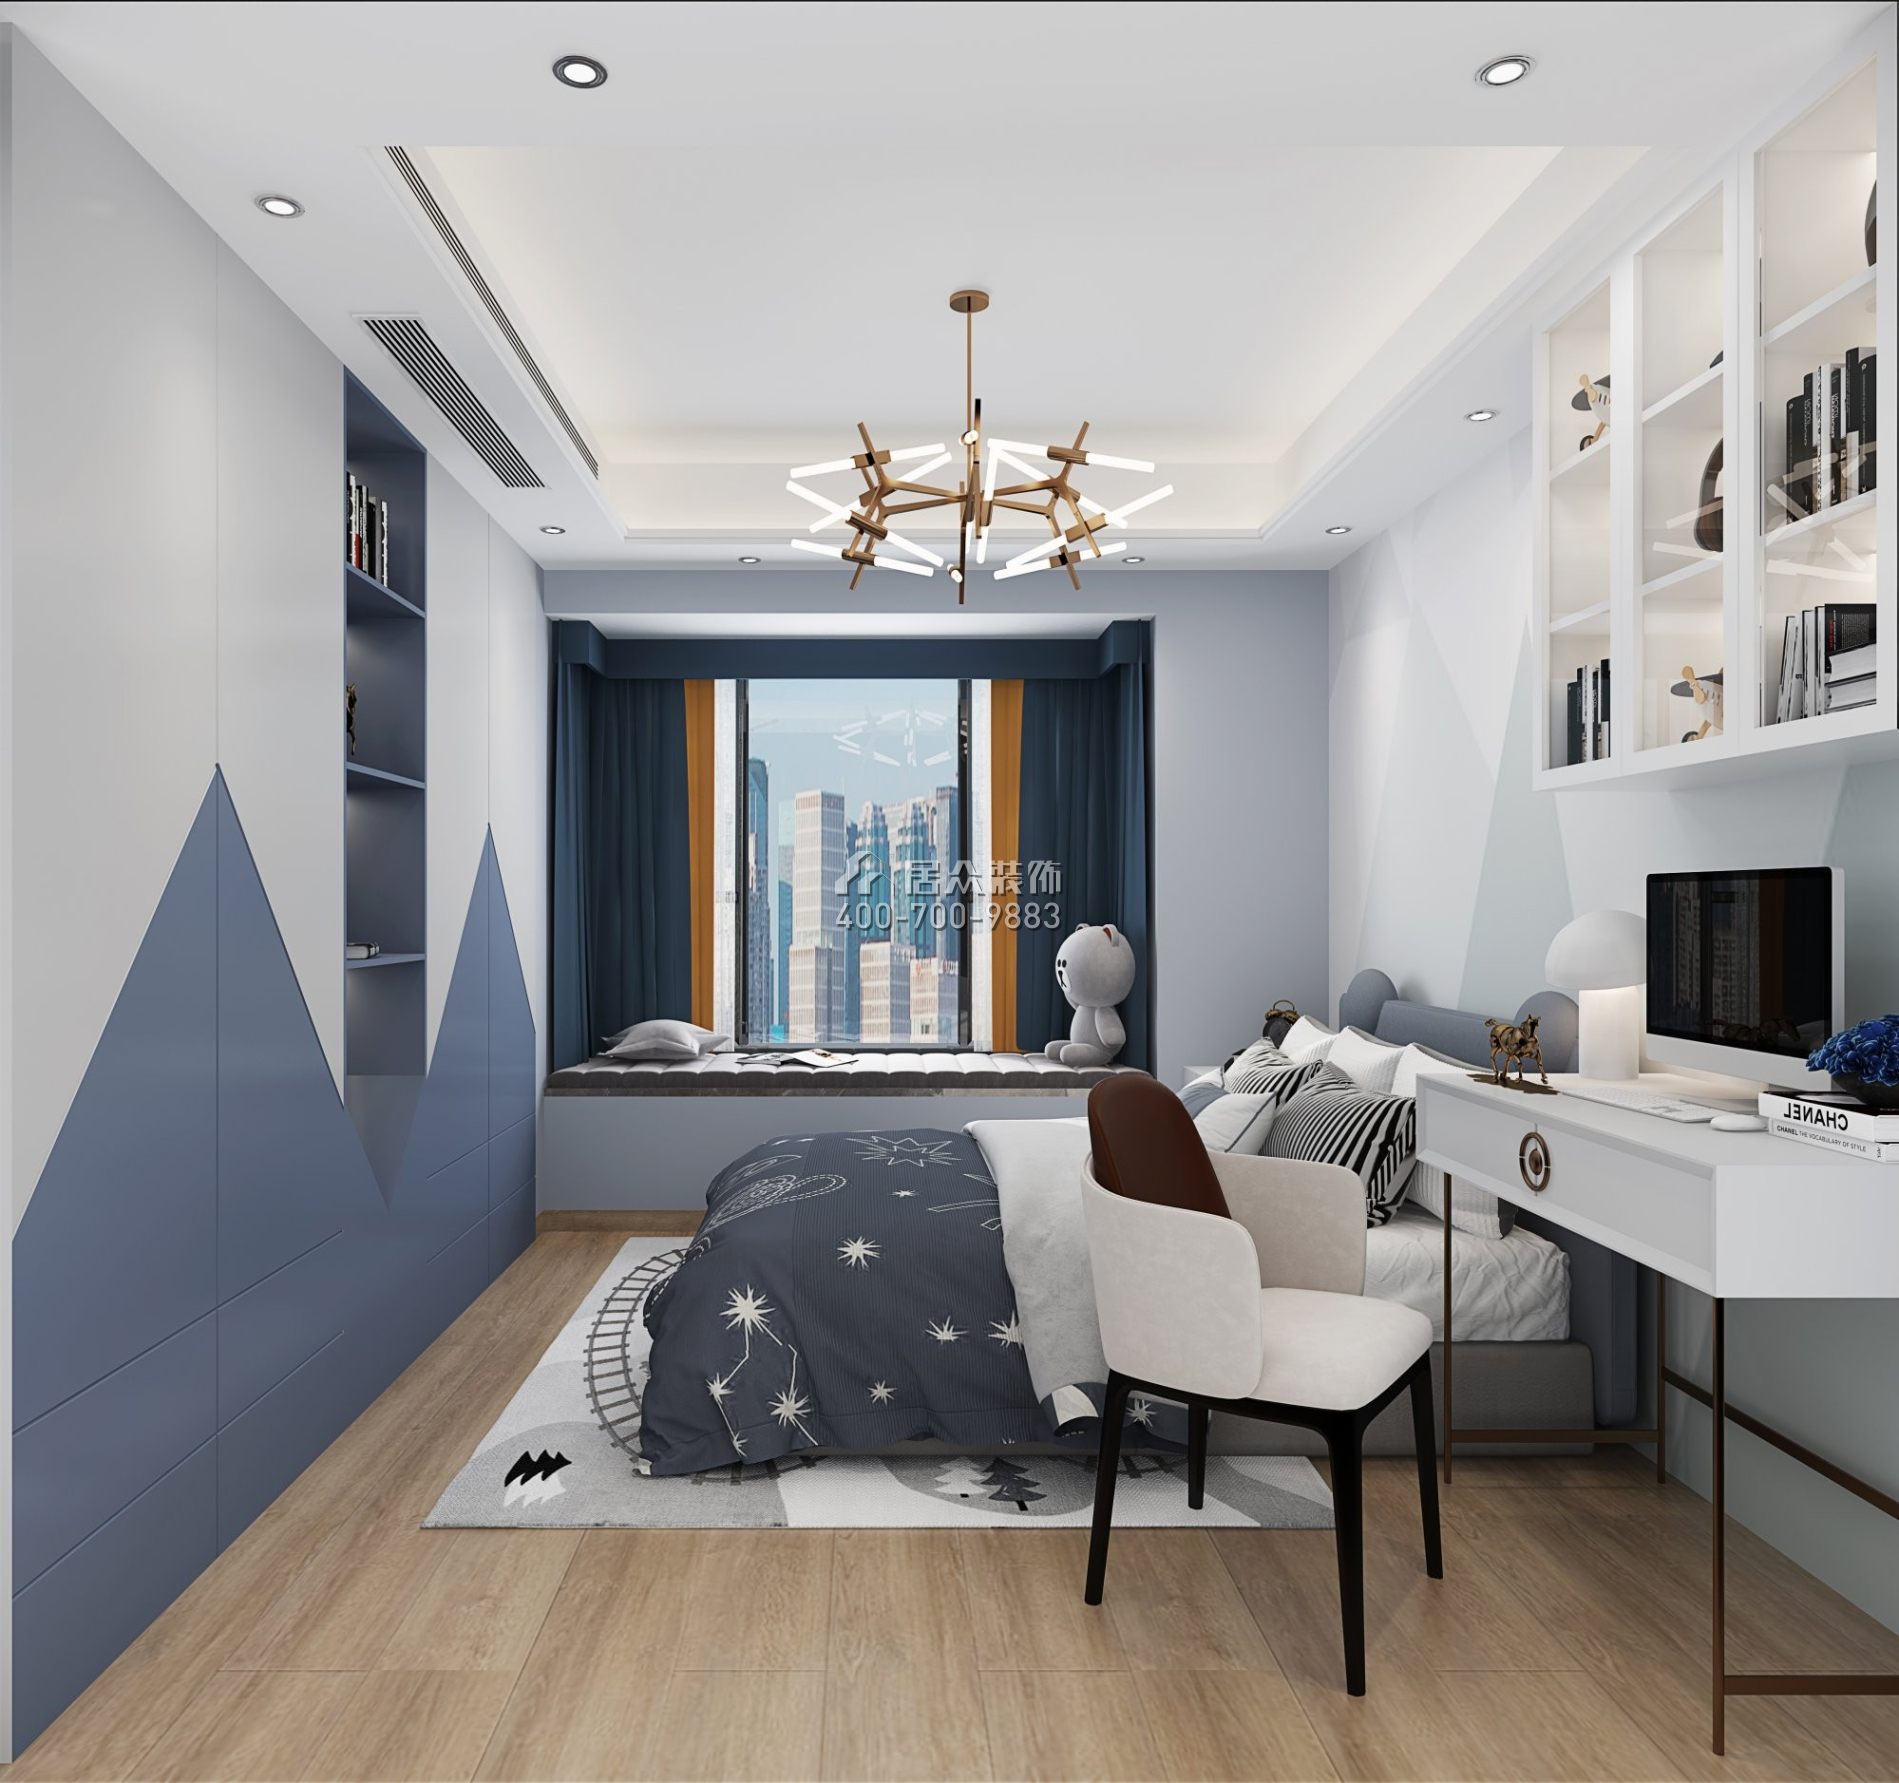 丽晶国际121平方米现代简约风格平层户型卧室装修效果图